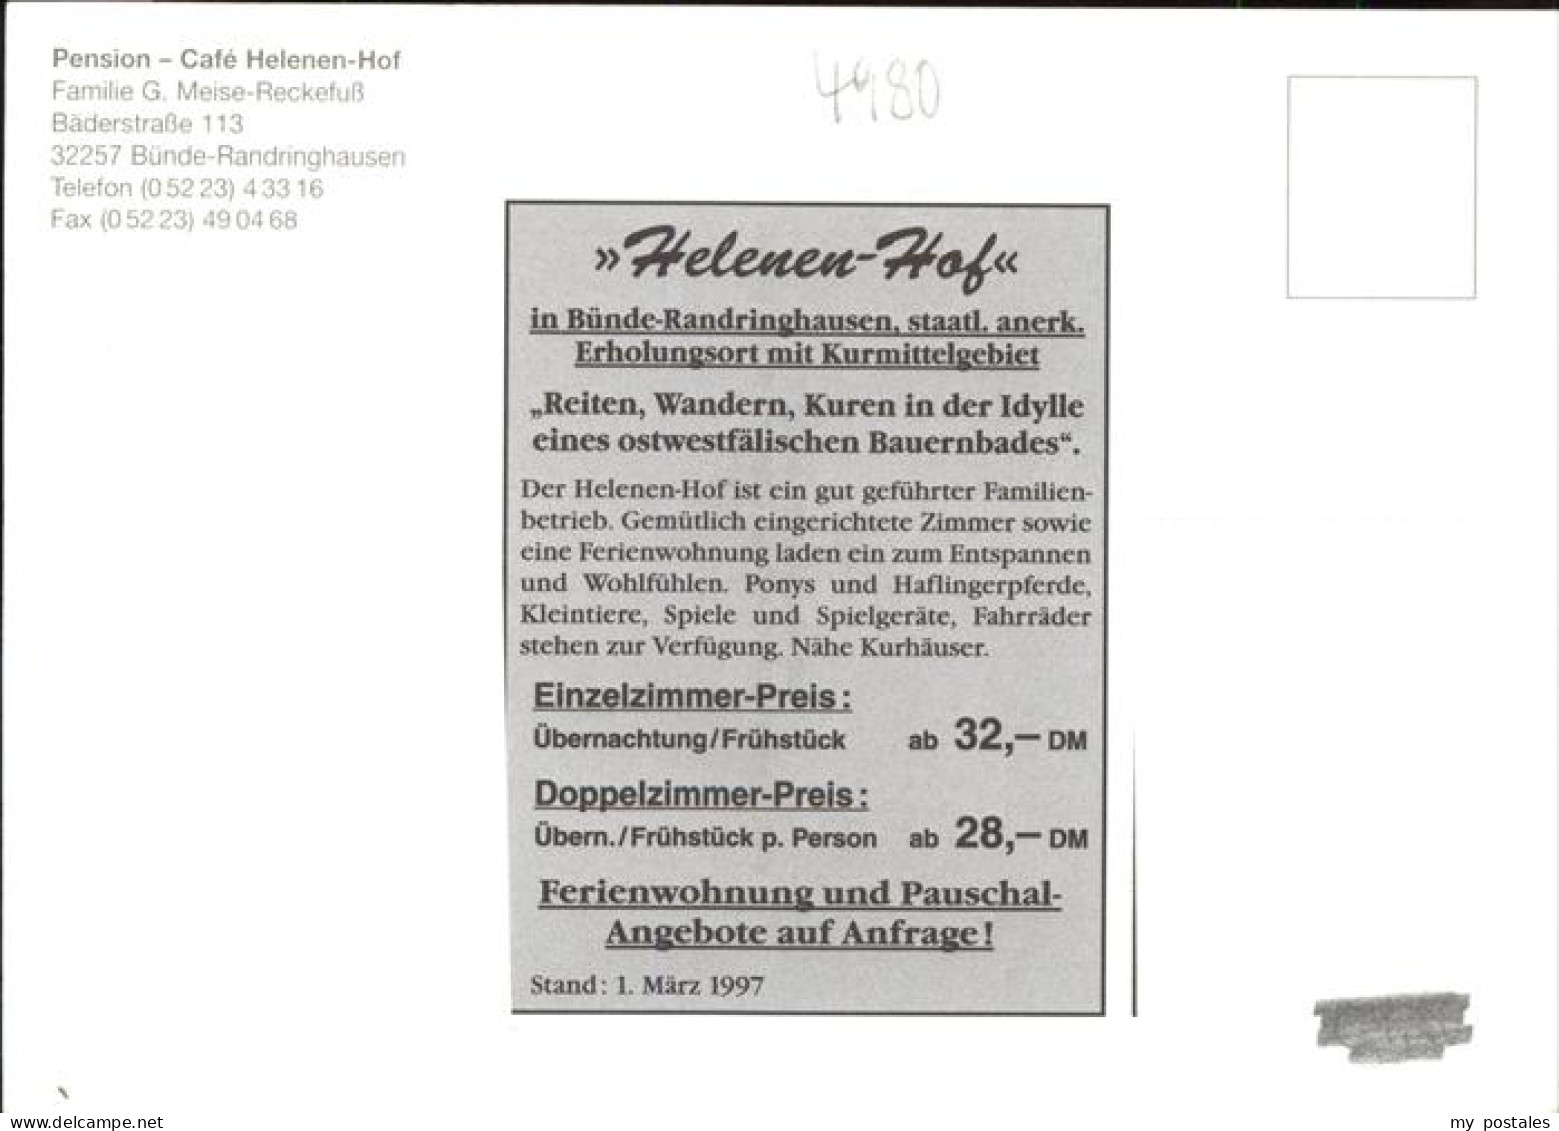 41277032 Bad Randringhausen Pension Cafe Helenen Hof Bad Randringhausen - Buende